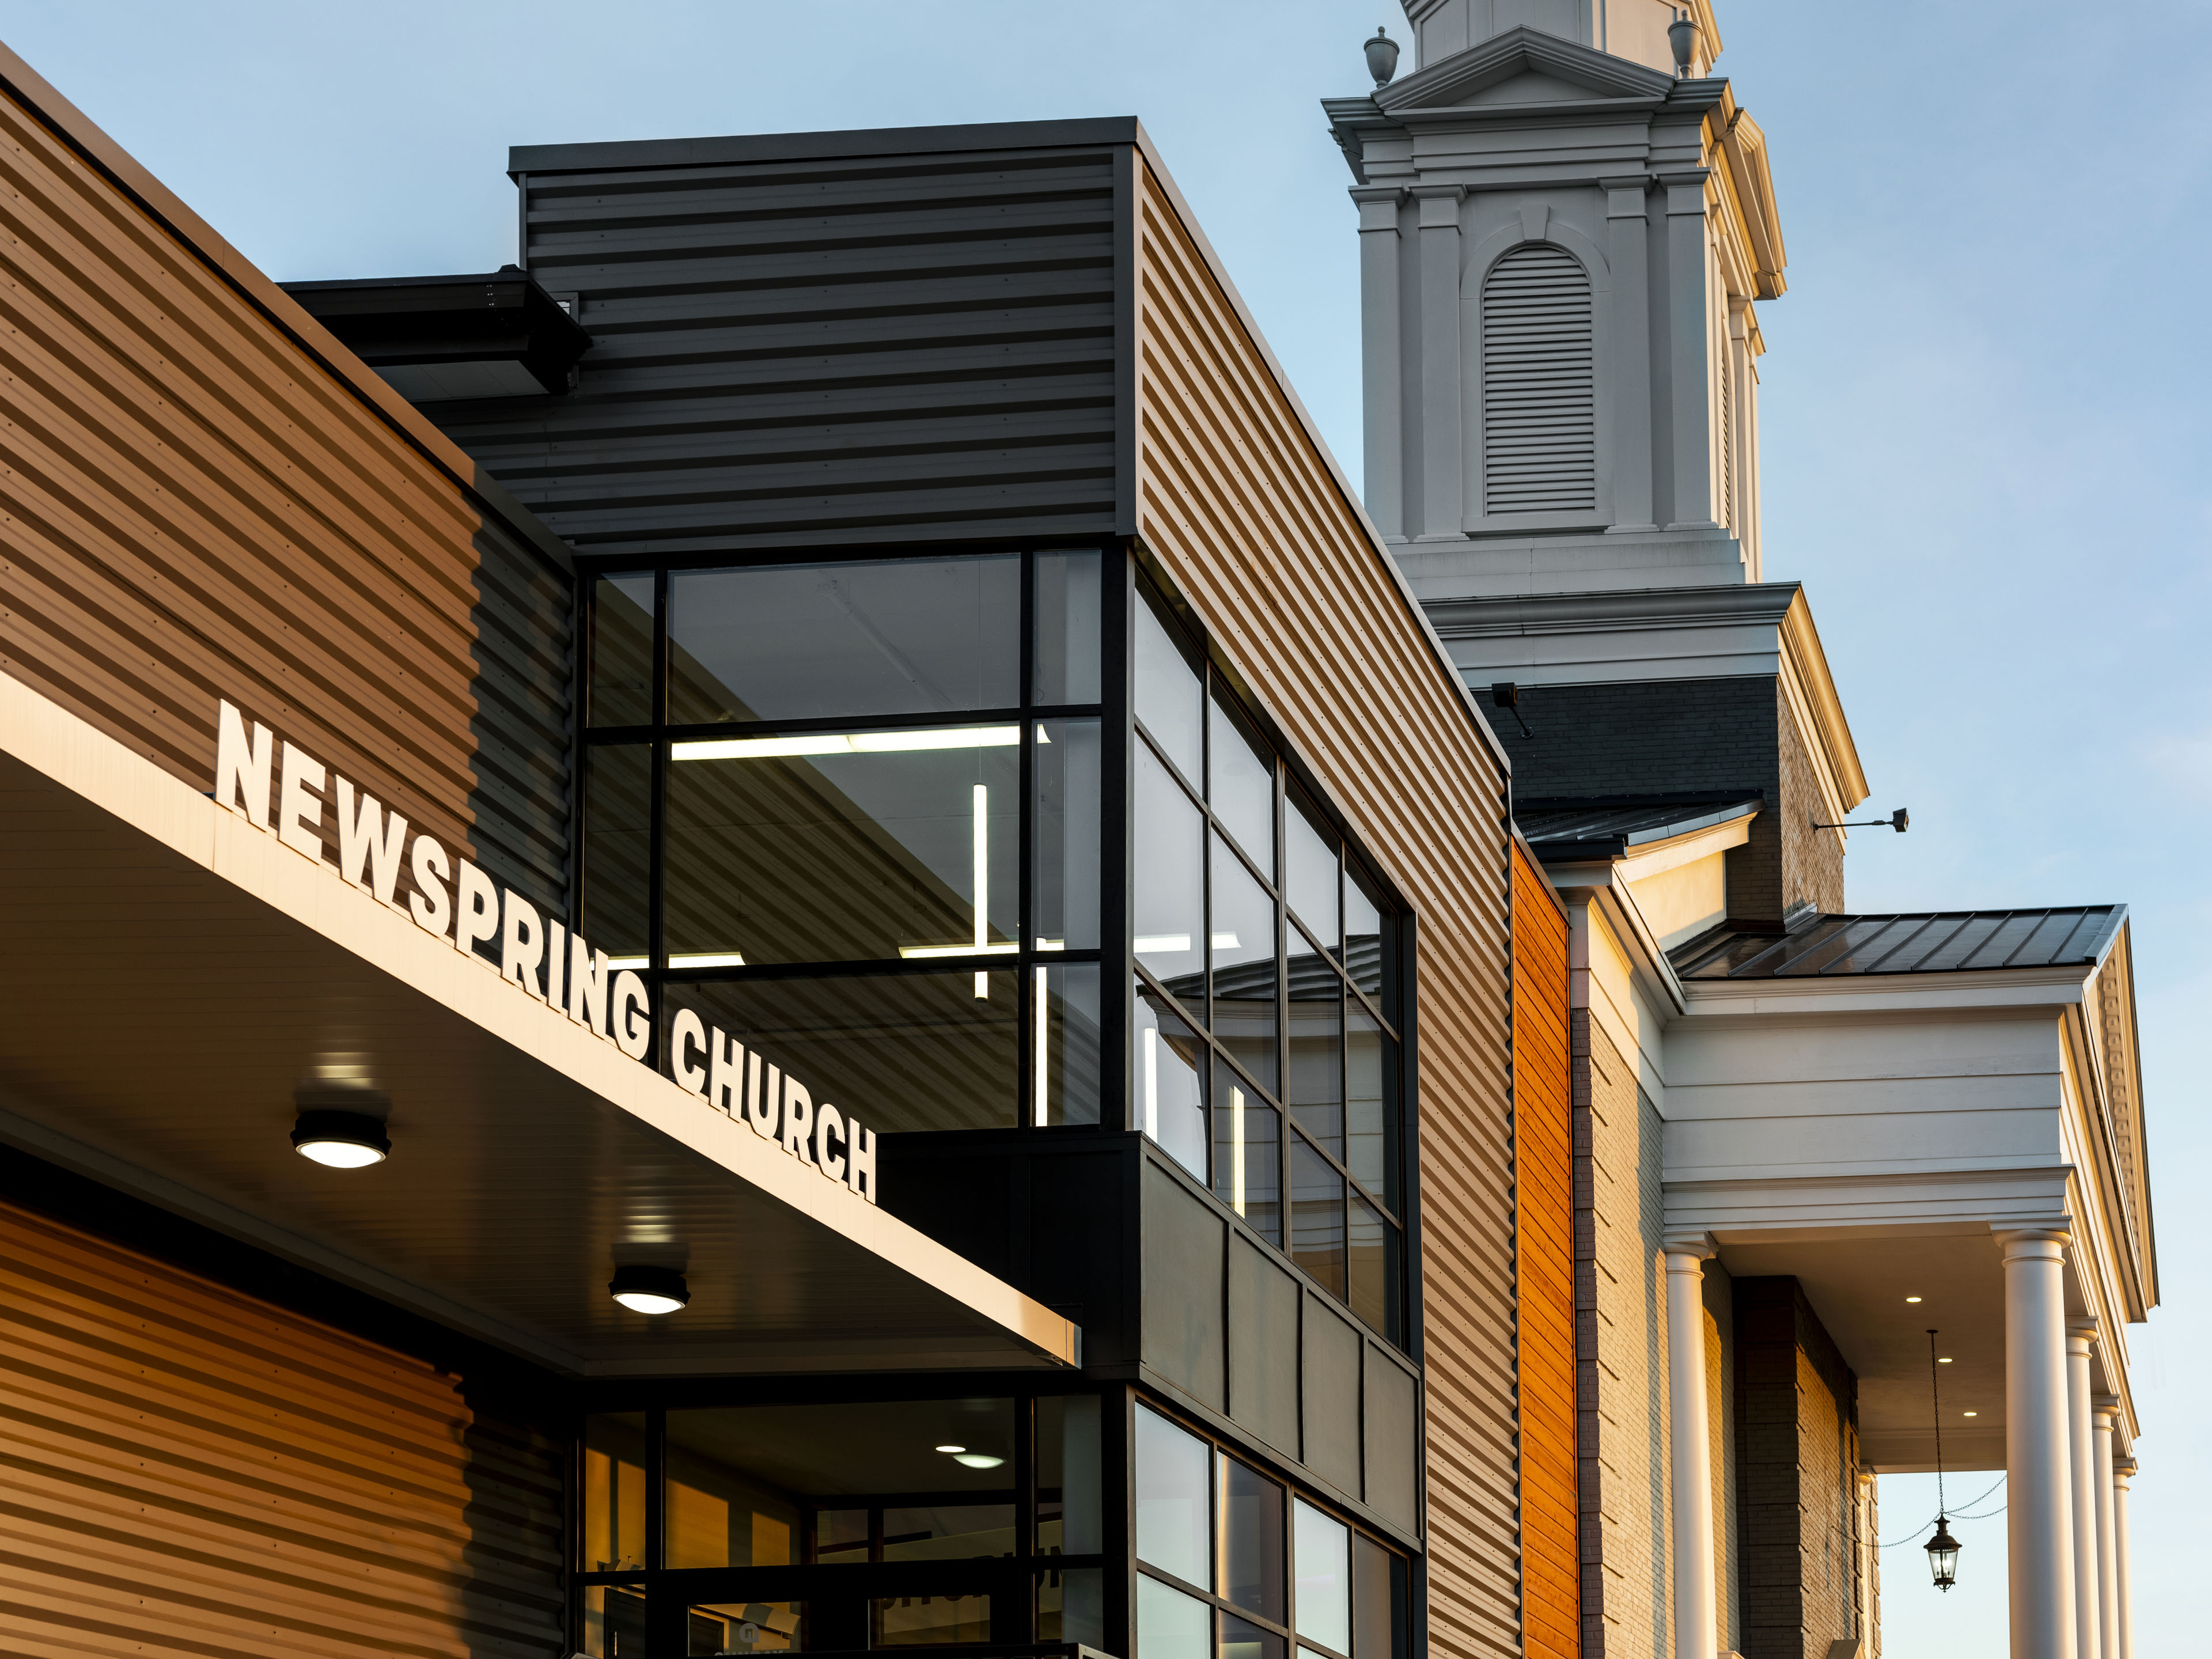 NewSpring Church - Eastlan Campus - Primary Facade Exterior Photo